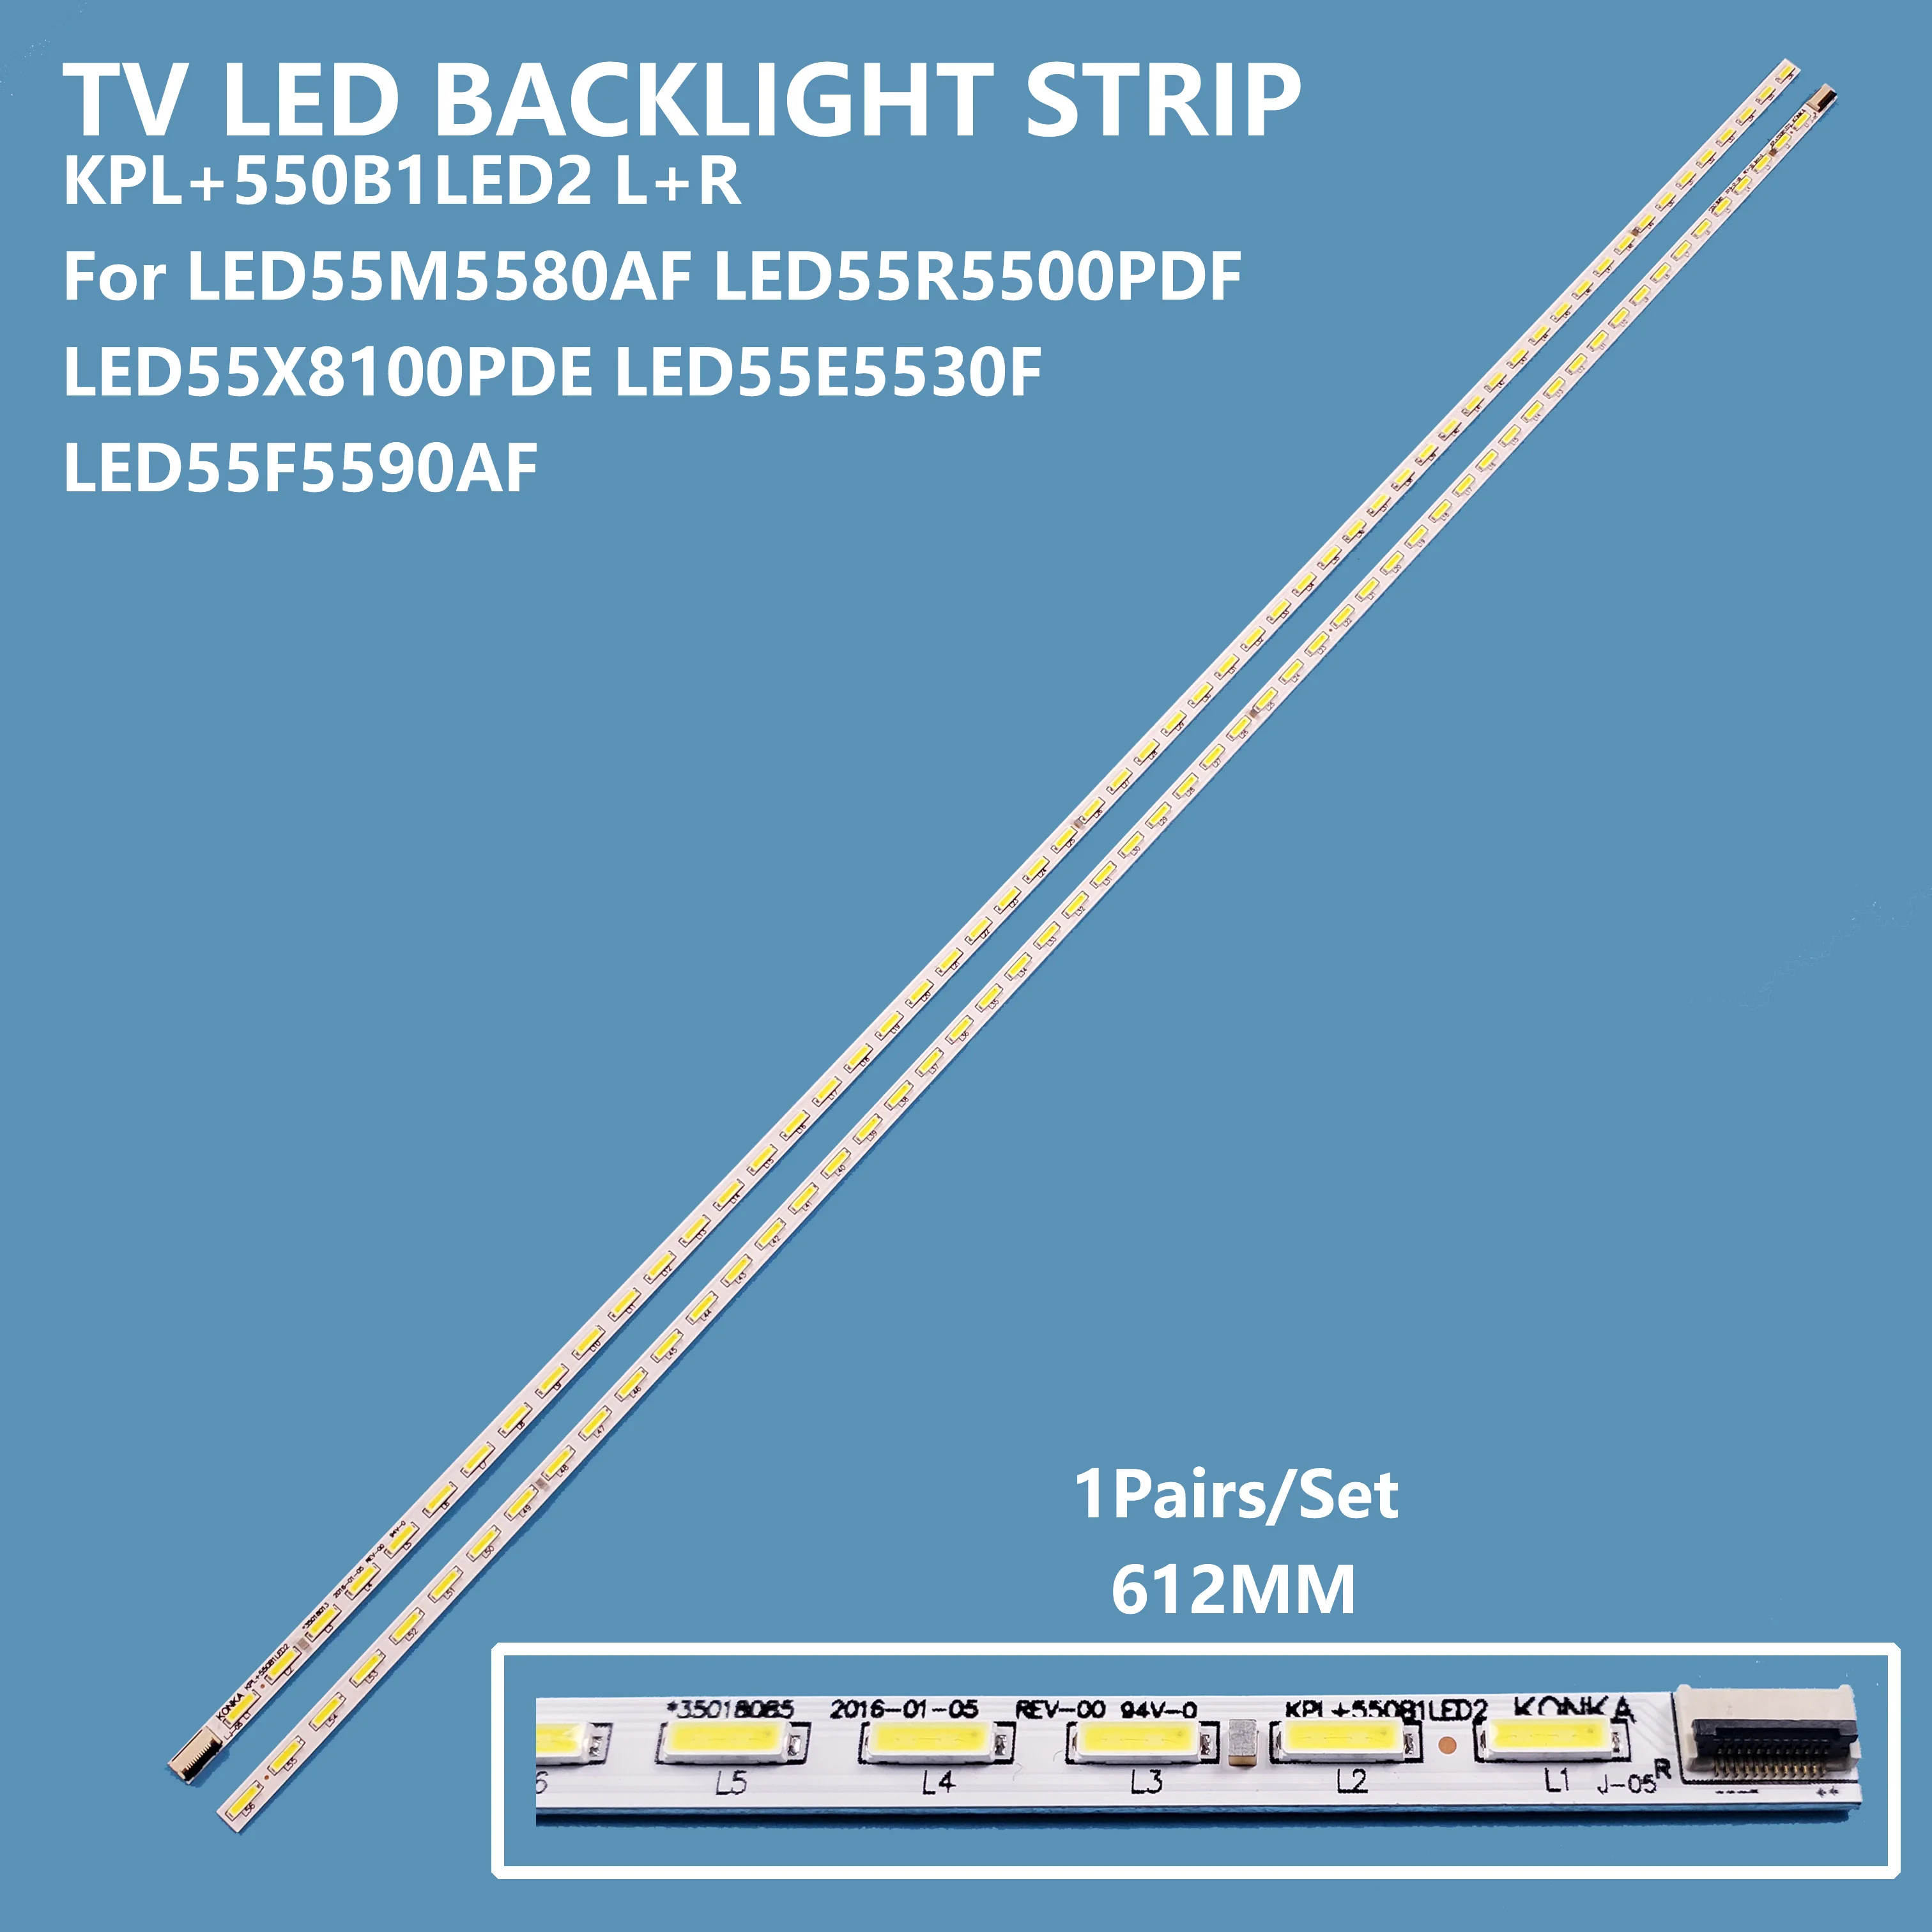 

2 шт., ленты для подсветки телевизора KPL + 550B1LED2 L + R для LED55M5580AF LED55R5500PDF LED55X8100PDE LED55F5590AF